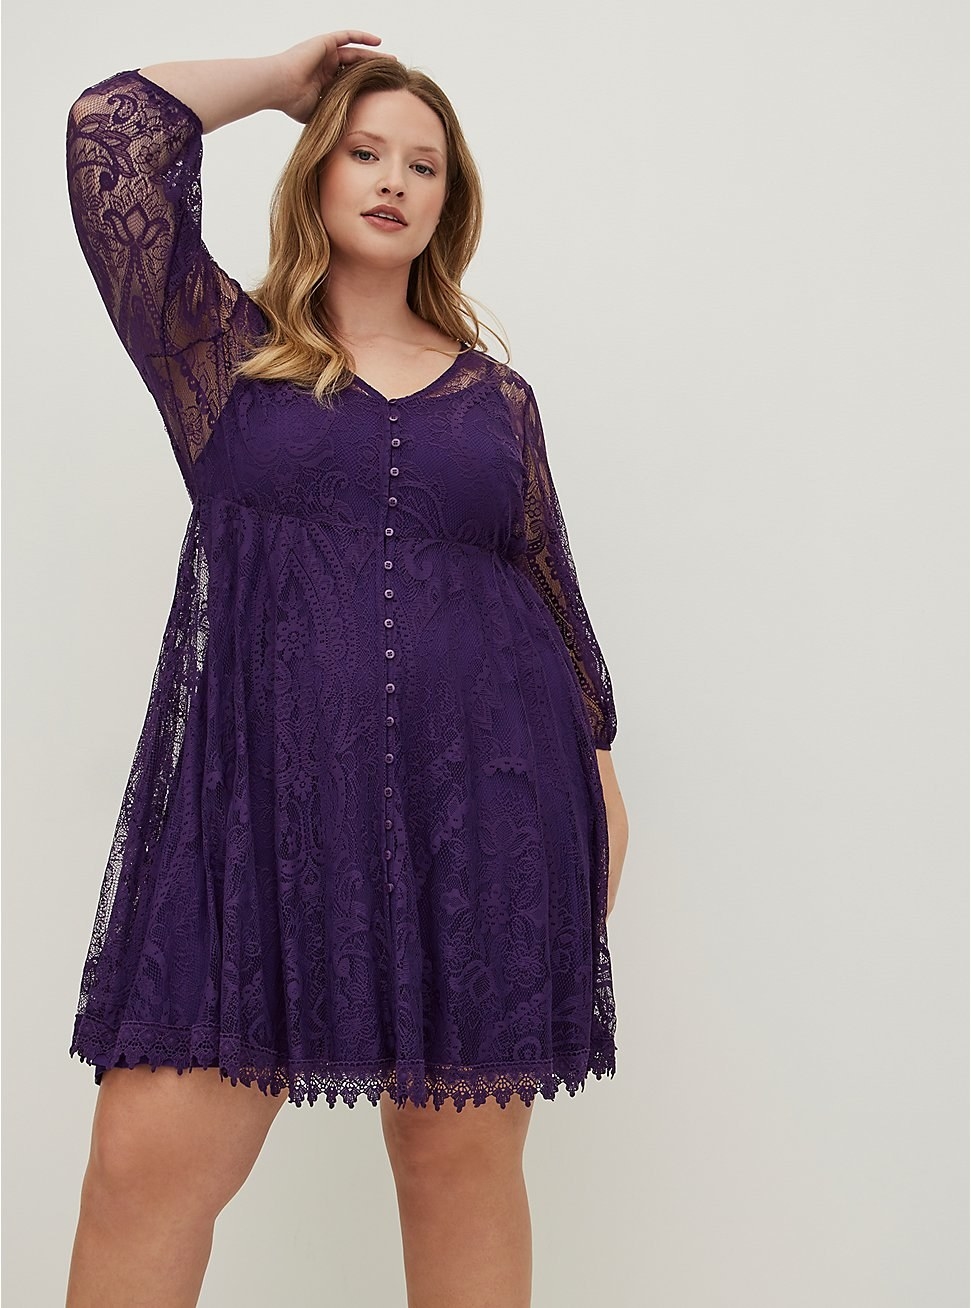 Model wearing purple lace skater dress